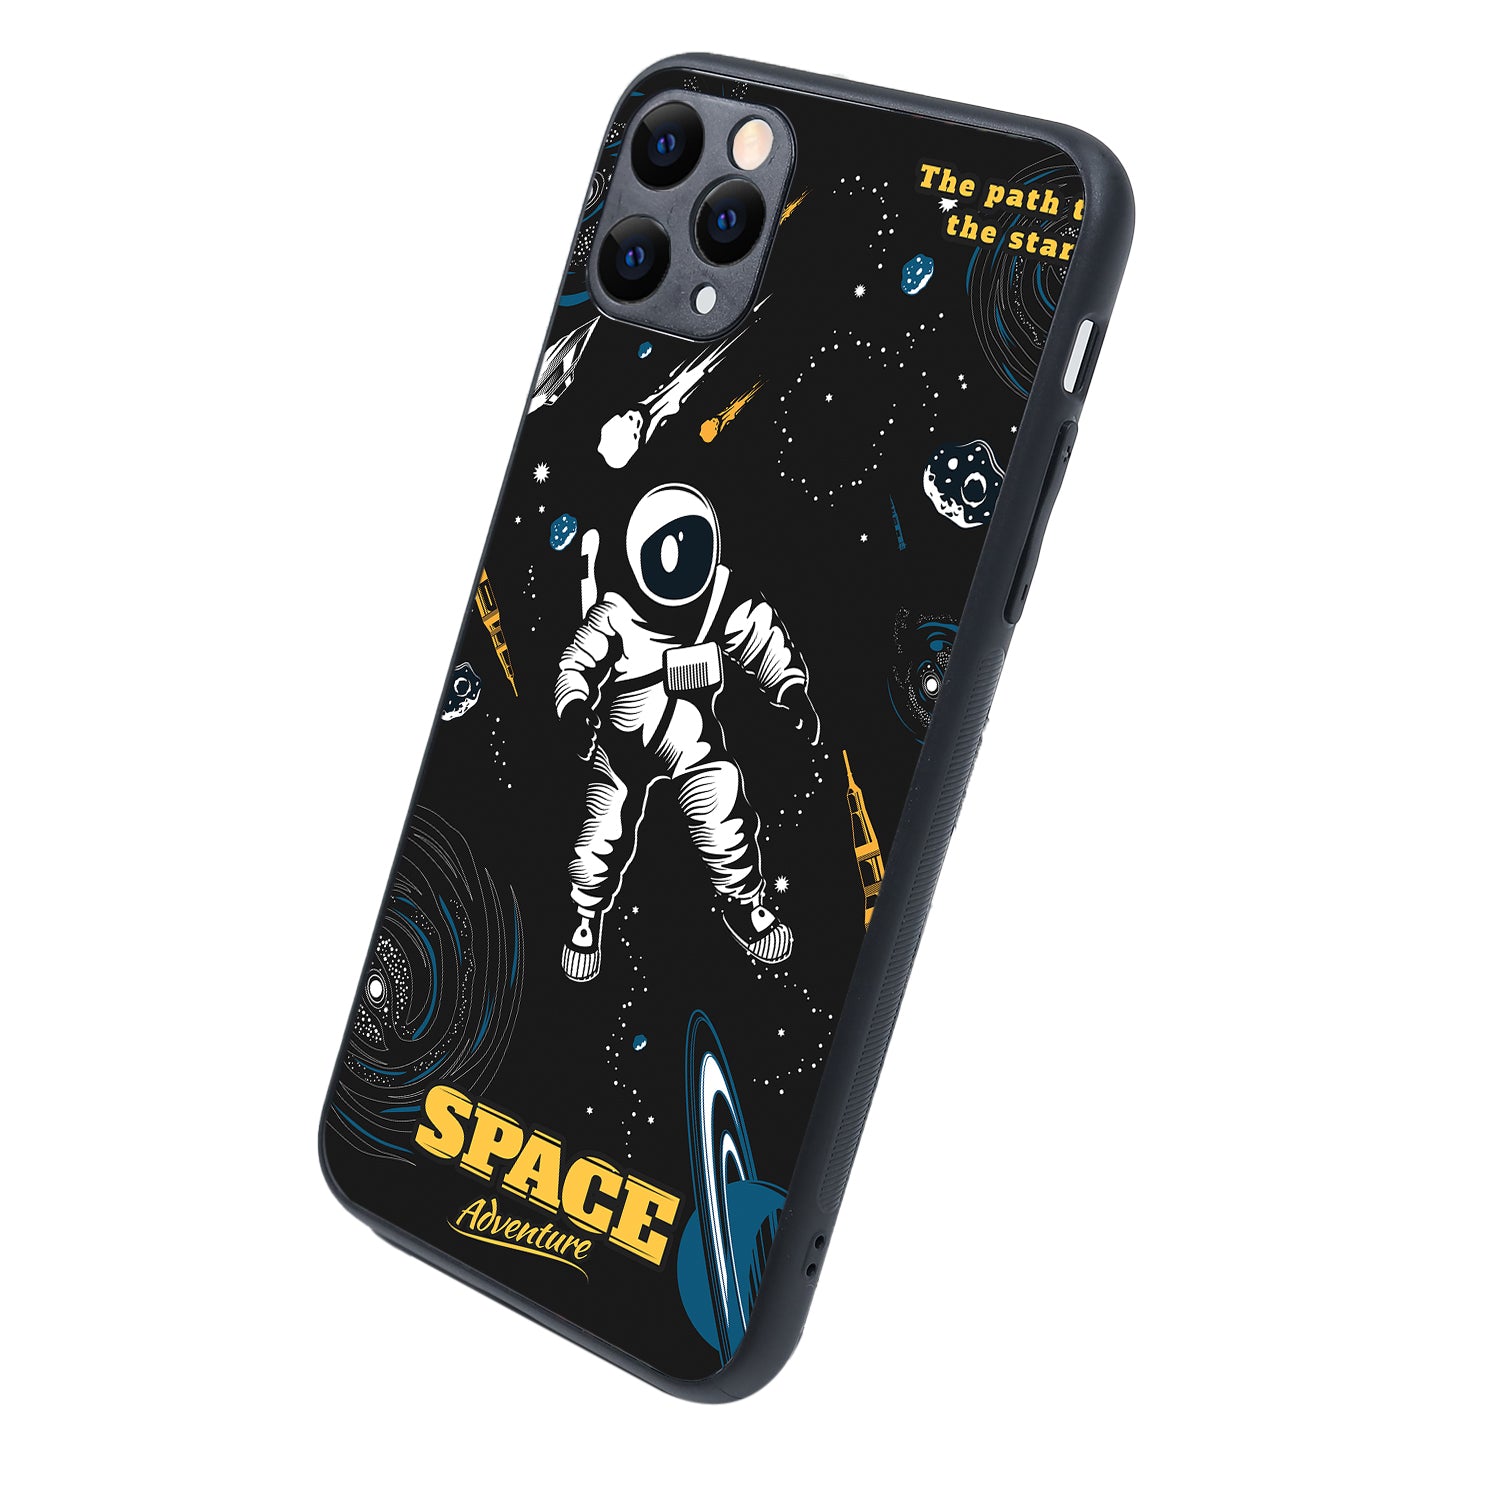 Astronaut Travel iPhone 11 Pro Max Case